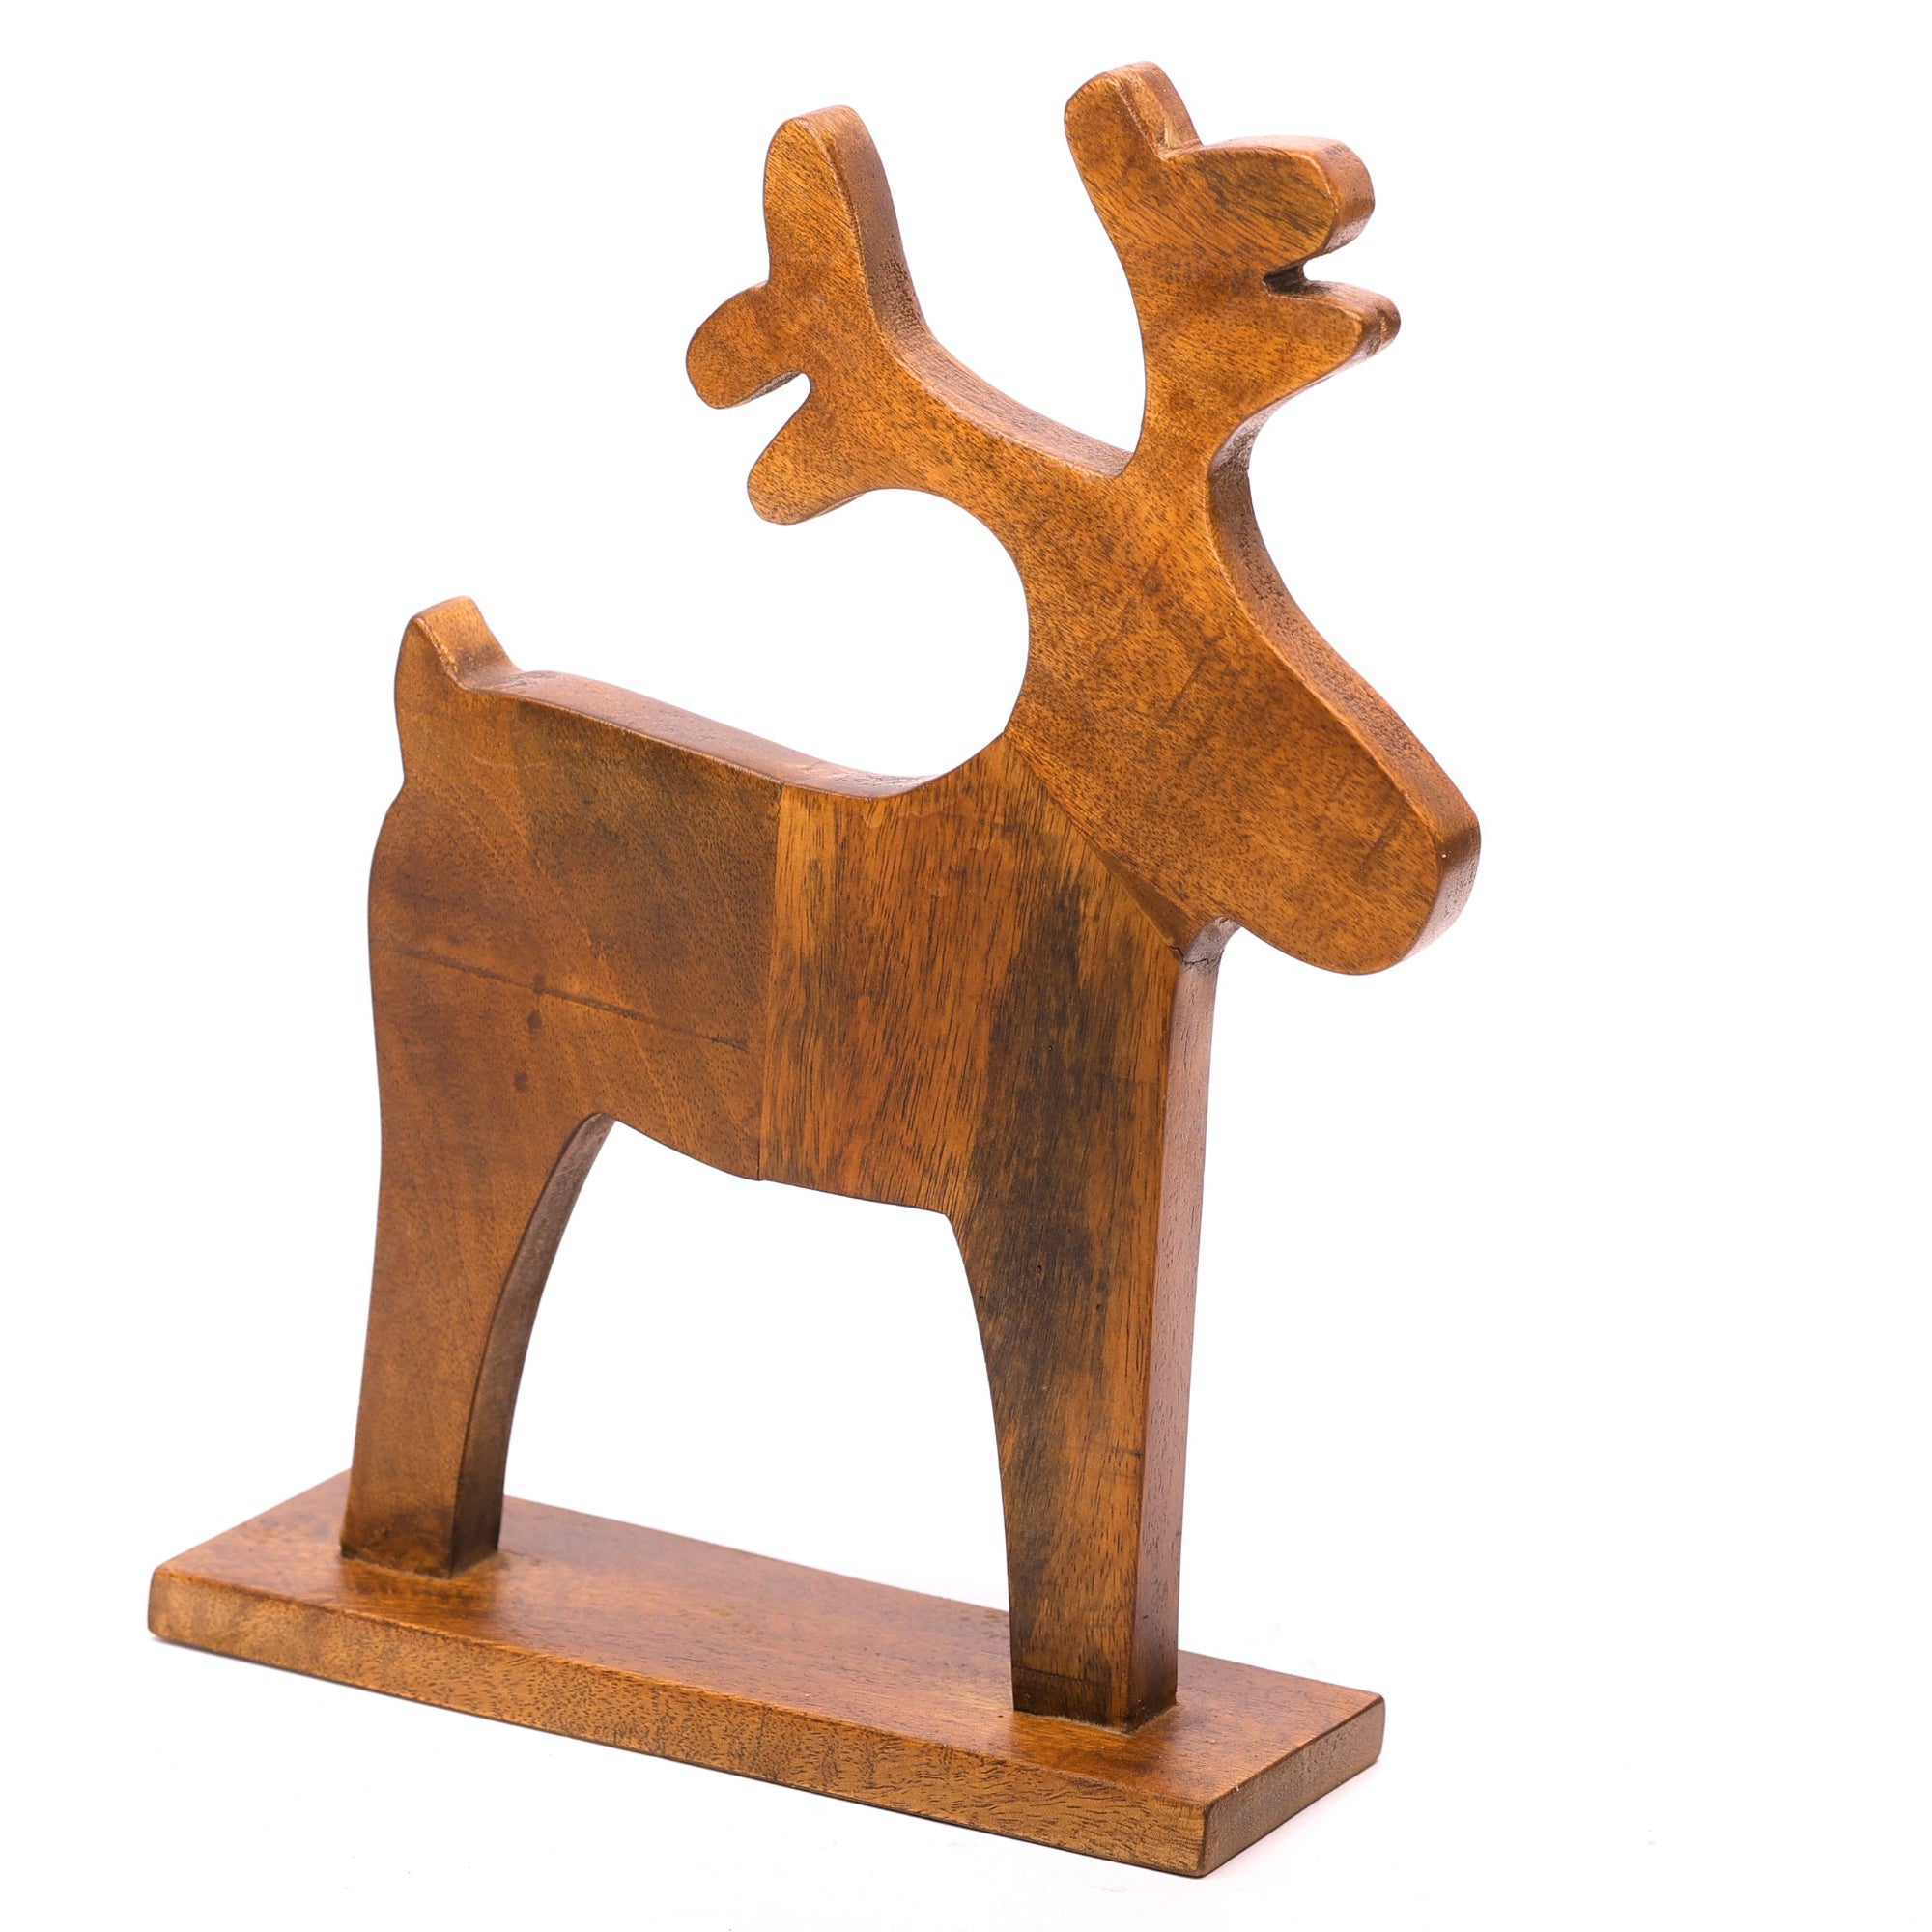 Wooden Santa Deer Animal Figurine